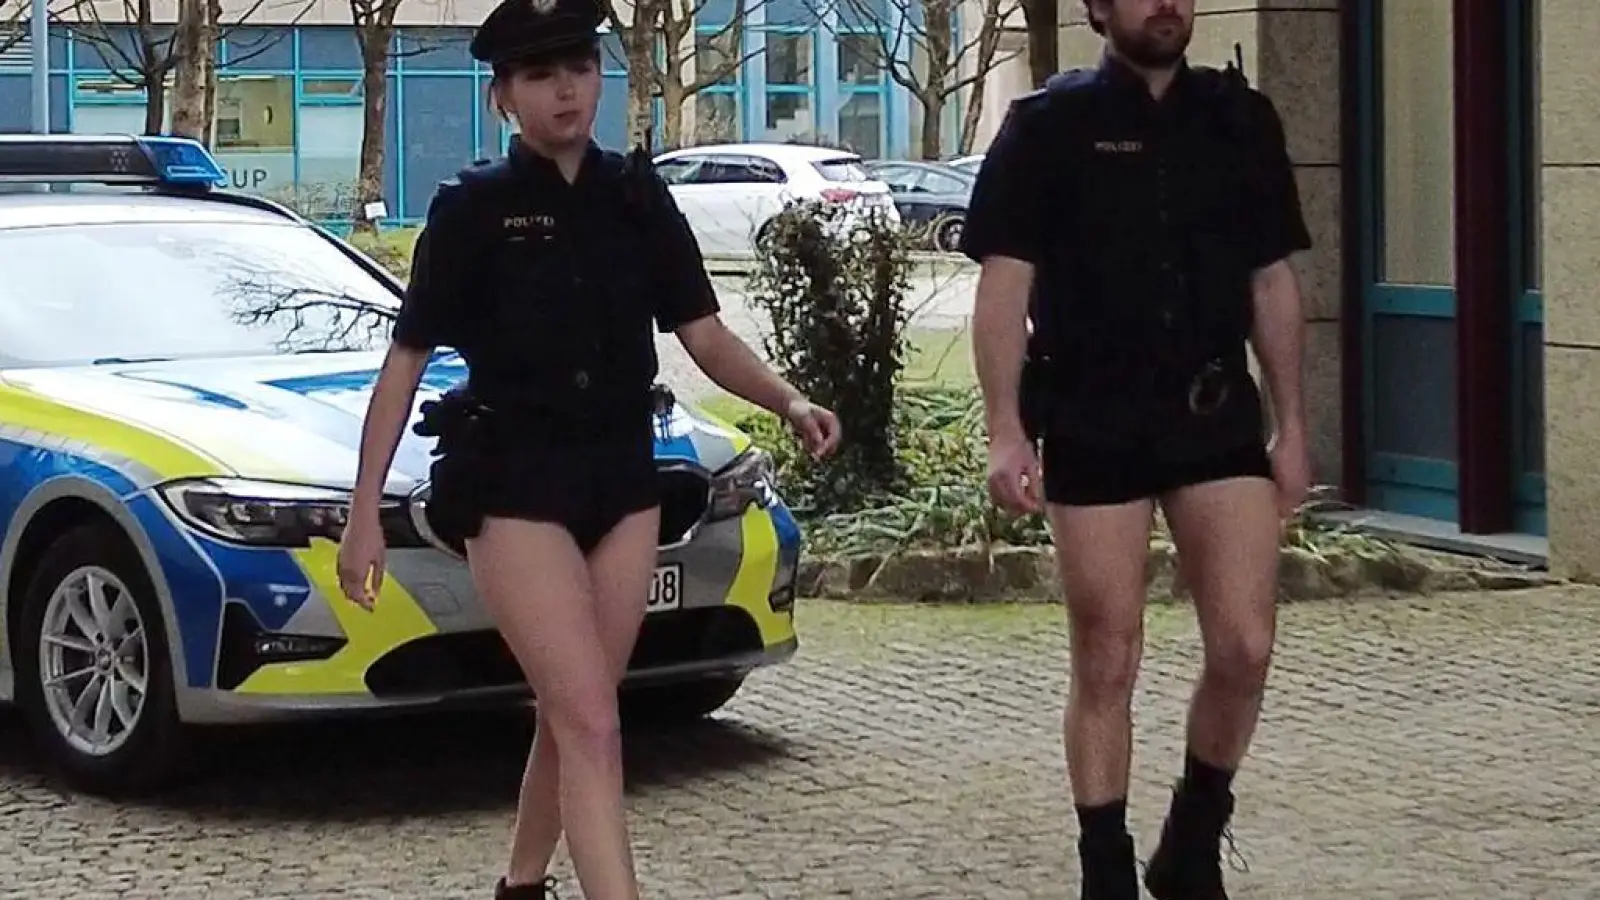 Das Standbild aus einem Youtube-Video der Polizeigewerkschaft (DPolG) zeigt Polizisten ohne Hosen und soll den eklatanten Mangel an Dienstkleidung bei der bayerischen Polizei anklagen. (Foto: -)